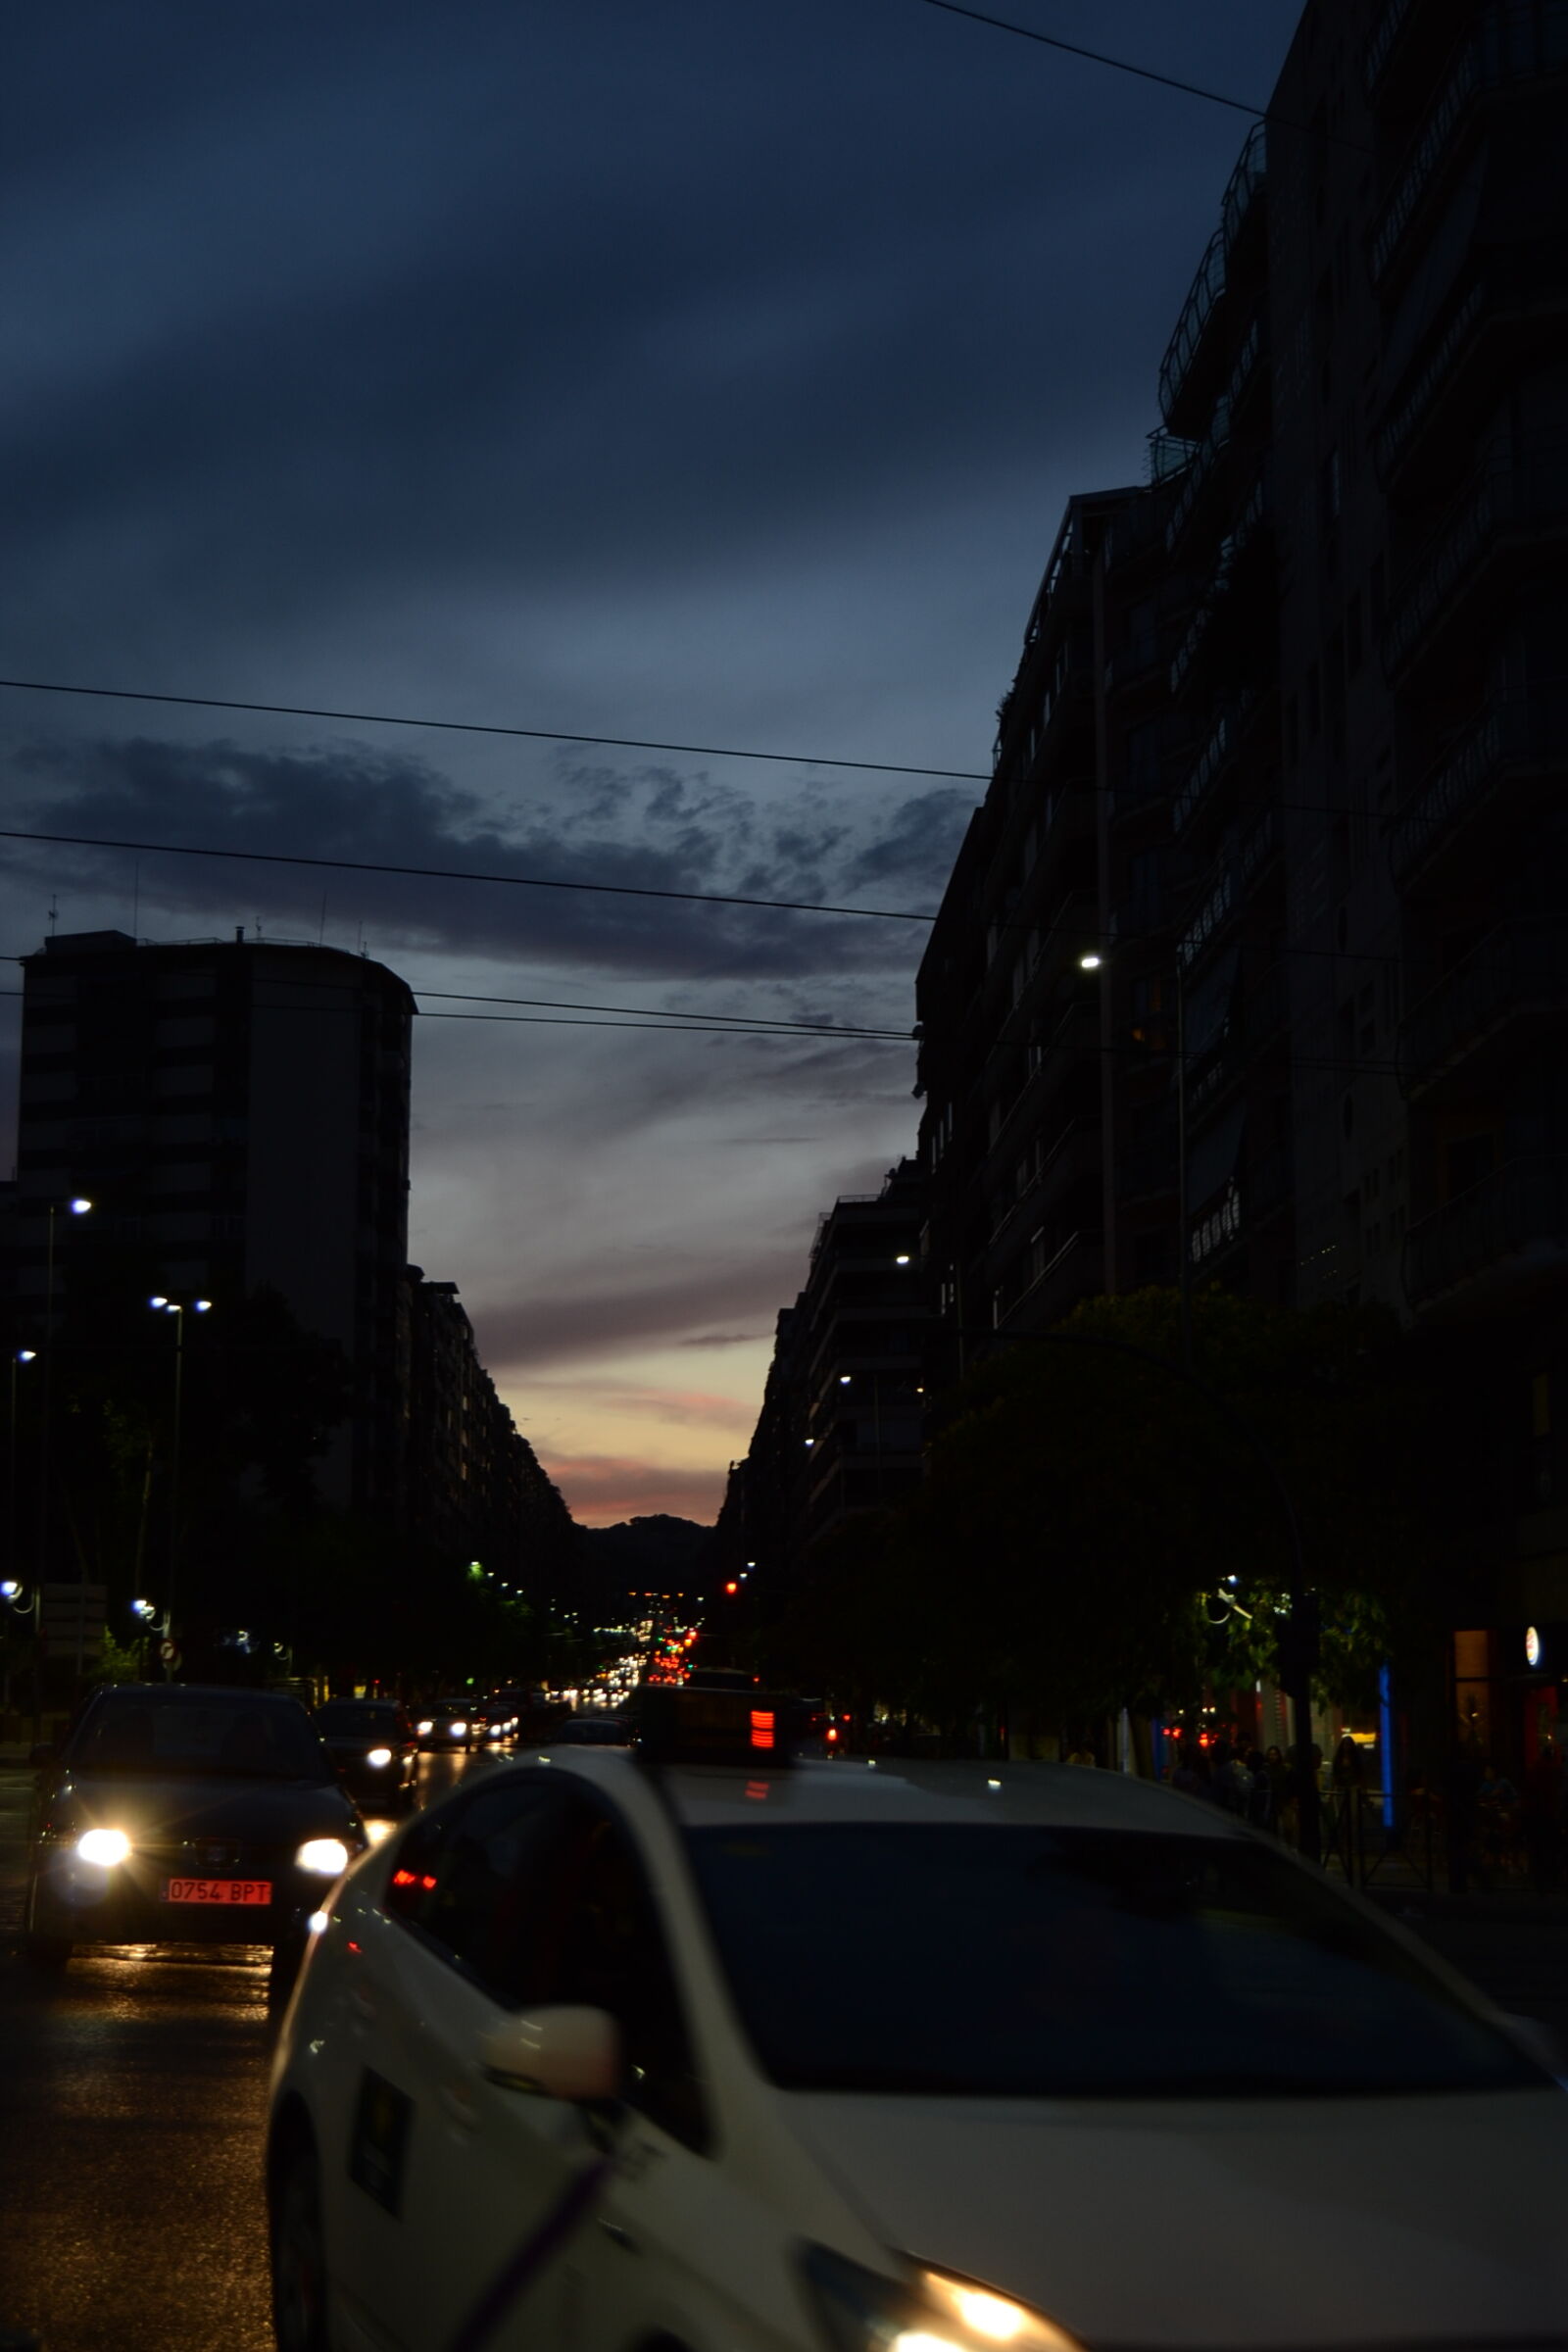 Nikon AF-S DX Nikkor 18-55mm F3.5-5.6G II sample photo. Car, city, light, night photography